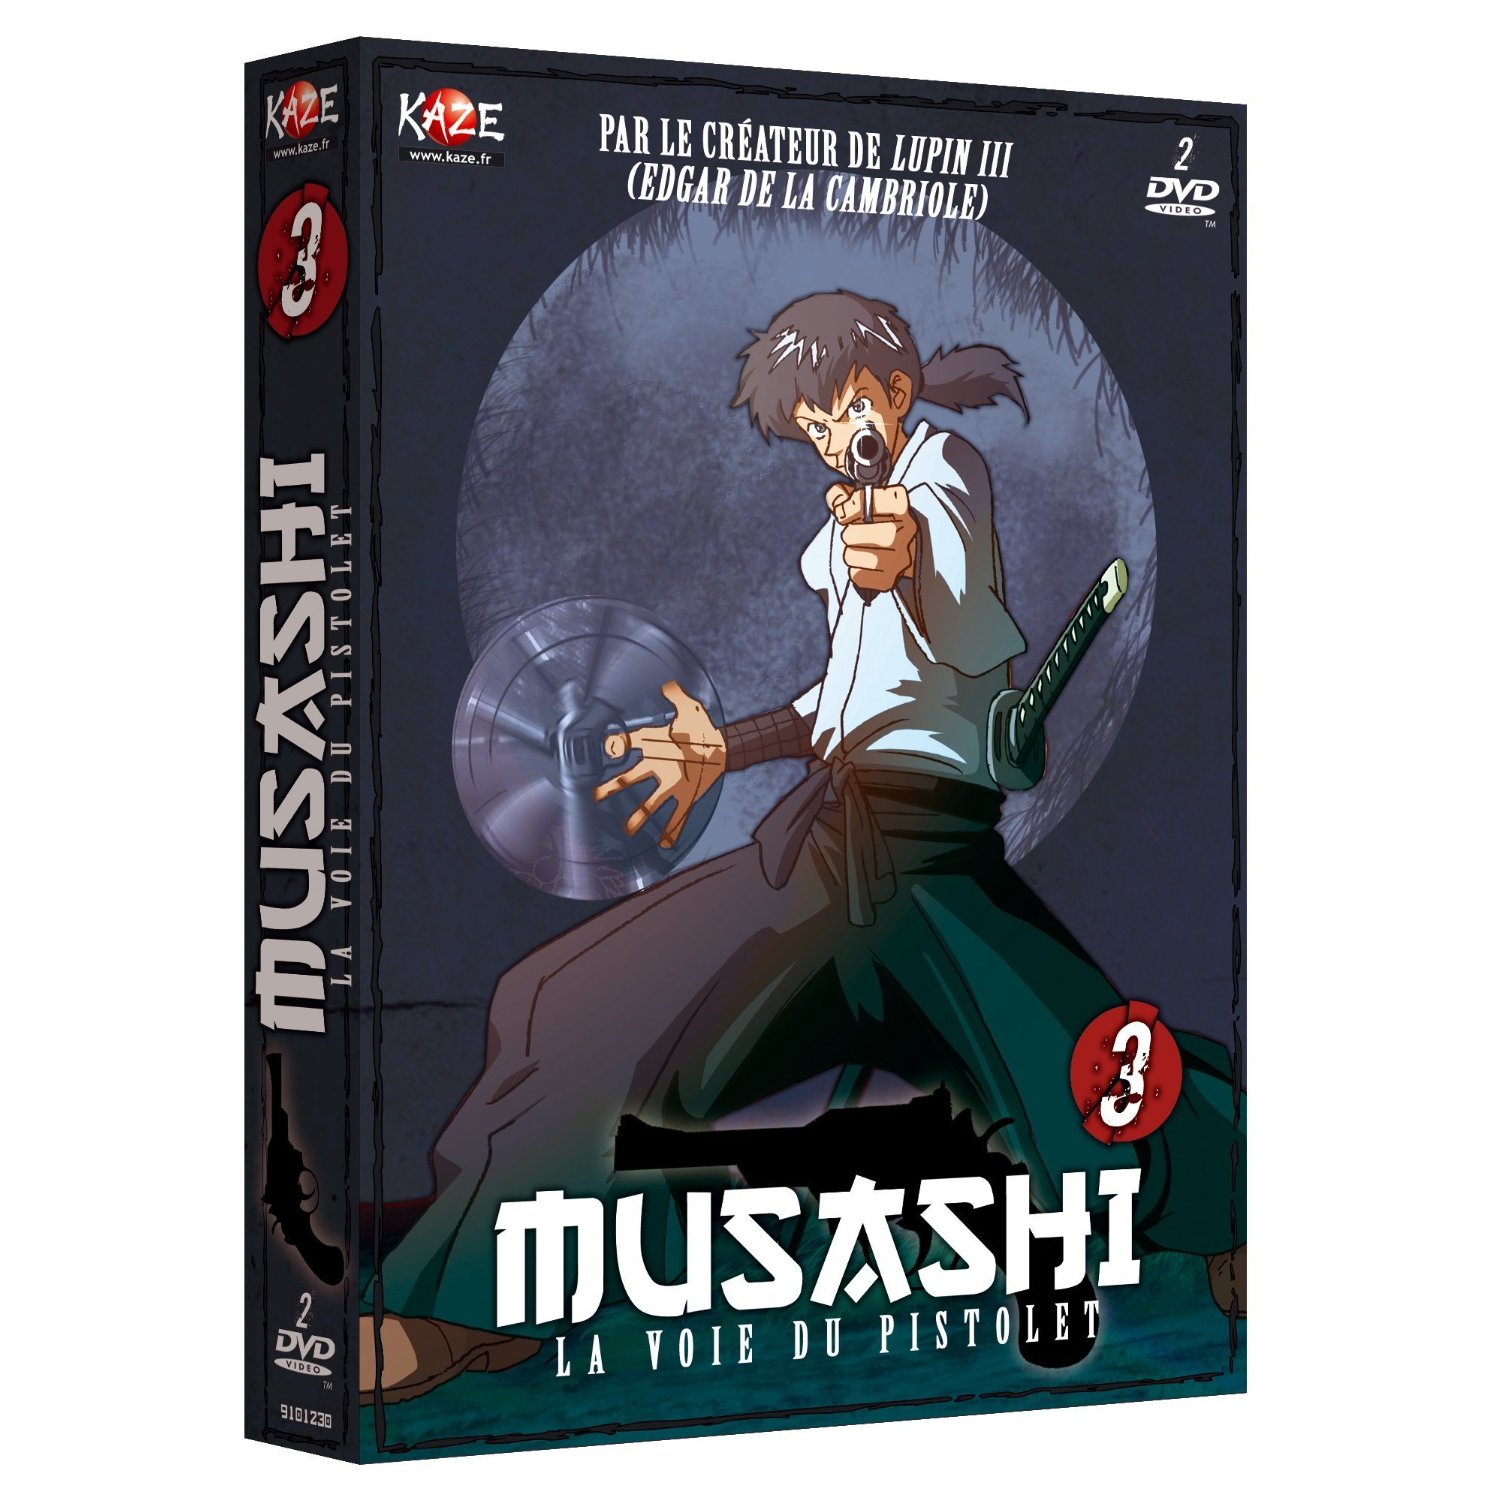 Musashi Gundoh